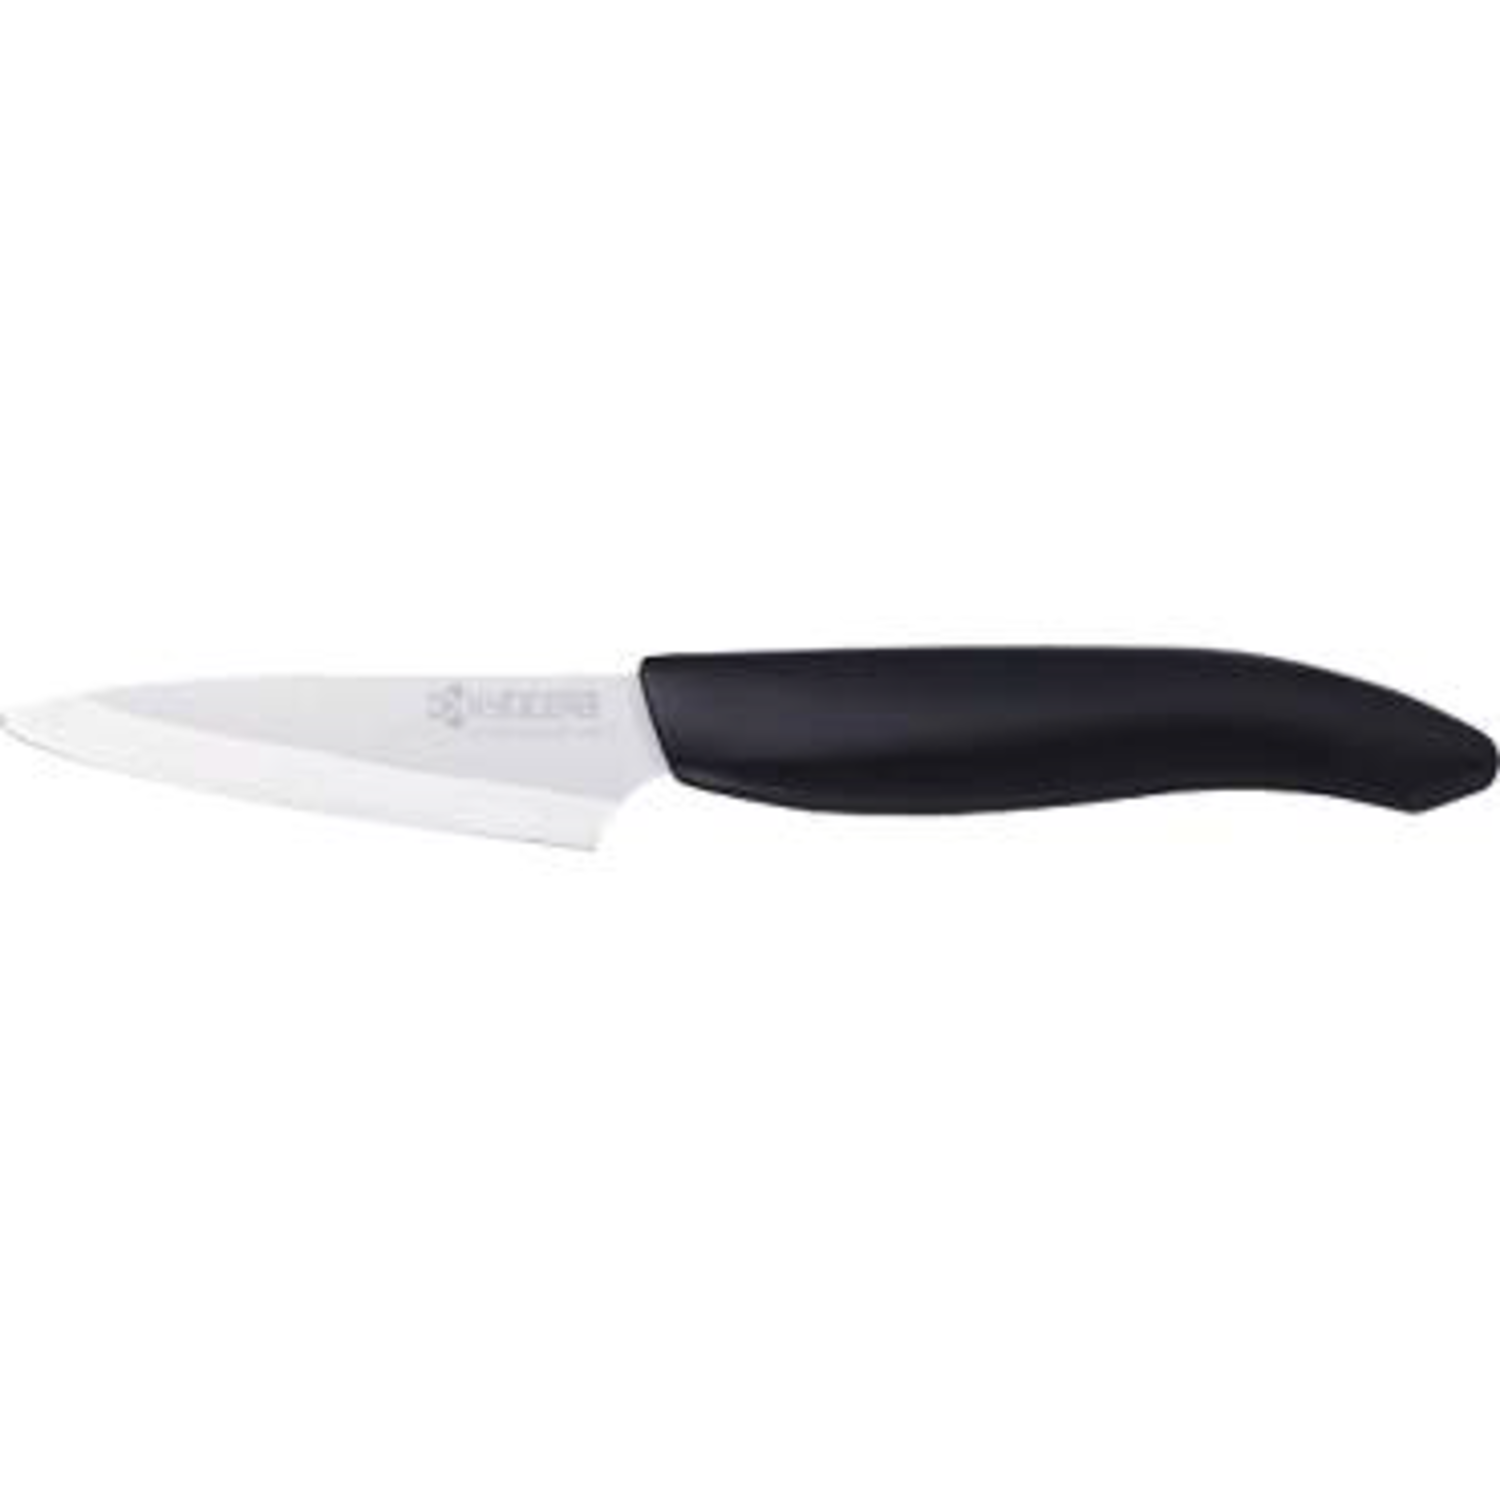 https://cdn.shoplightspeed.com/shops/633447/files/18630150/1500x4000x3/kyocera-kyocera-black-3-ceramic-paring-knife.jpg